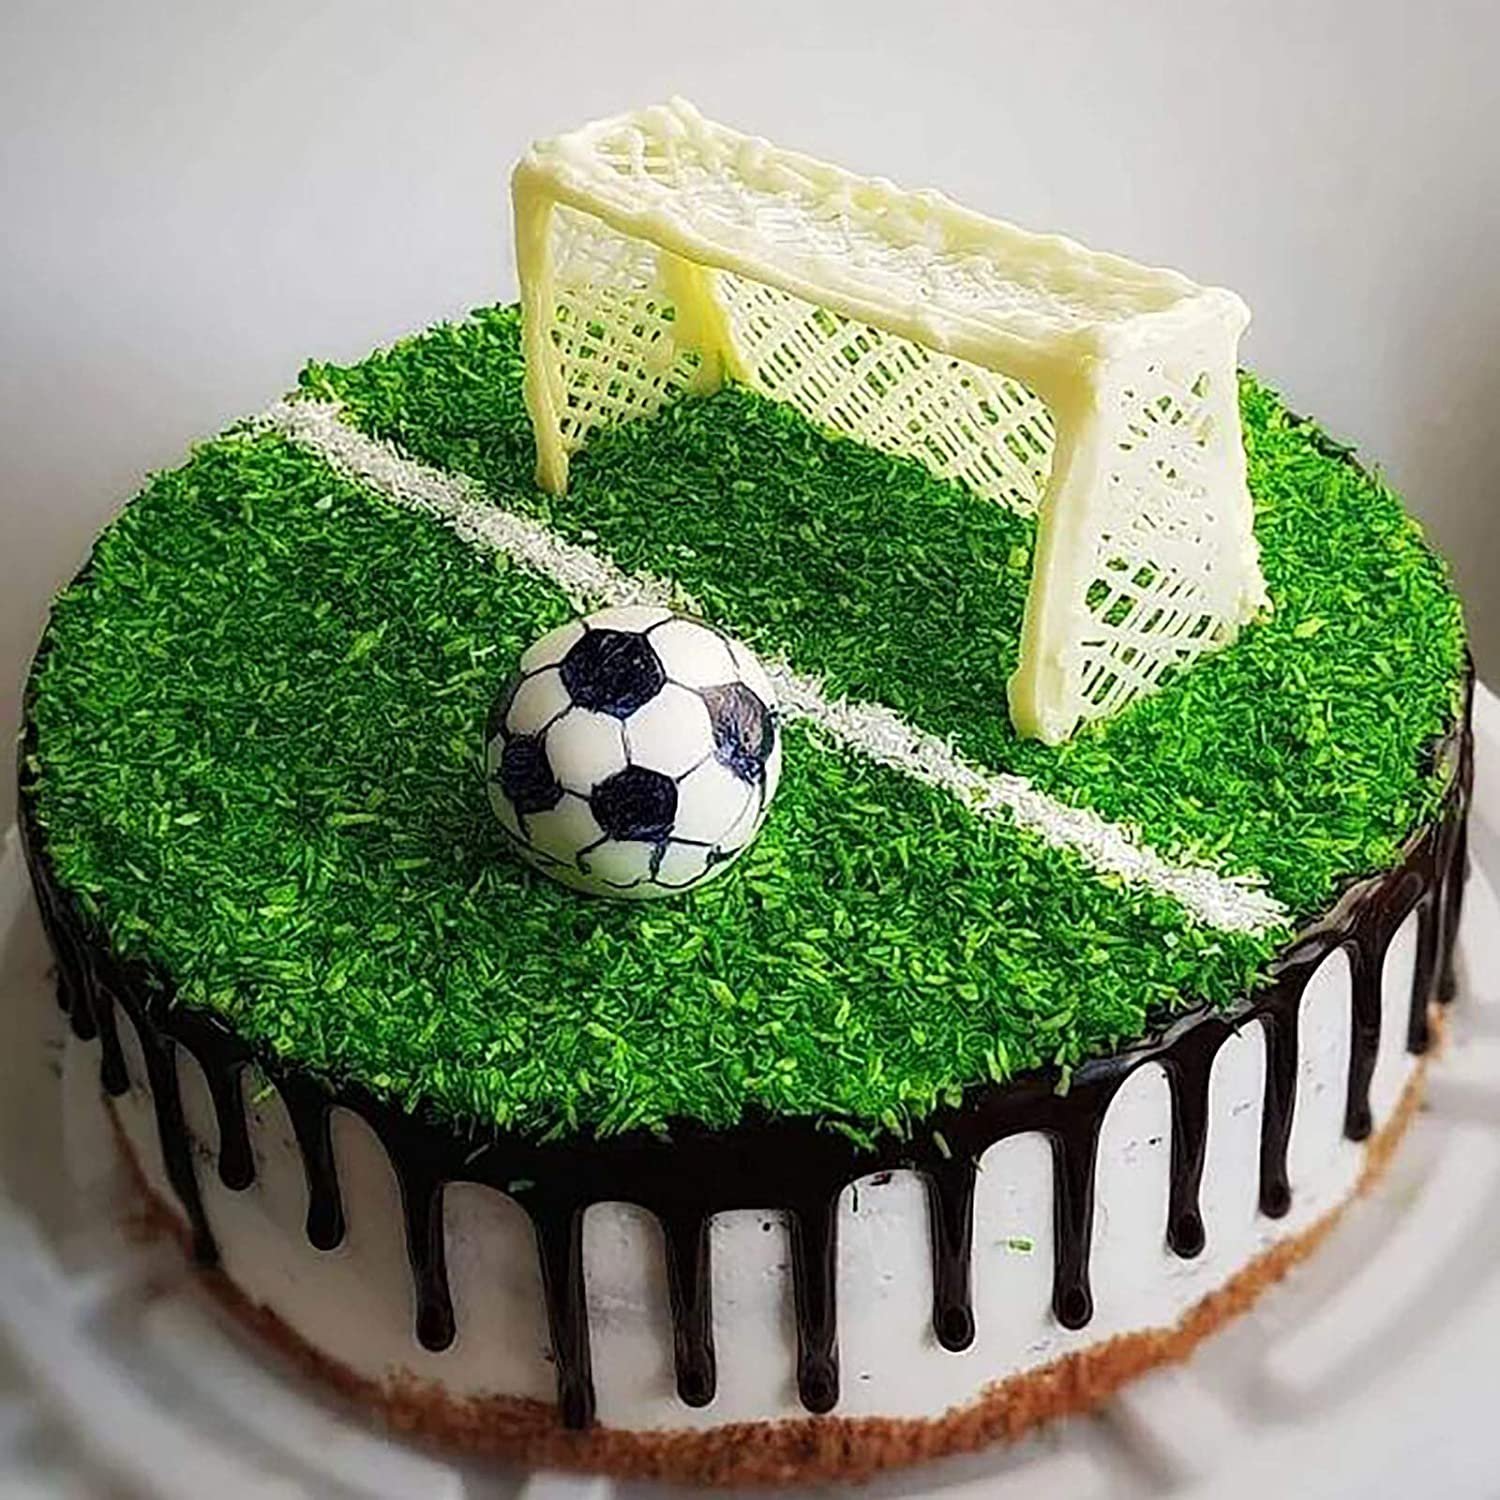 День рождения футбола год. Торт футбольное поле. Торт с футбольной тематикой. Торт «футболисту». Торт футбольный для мальчика.